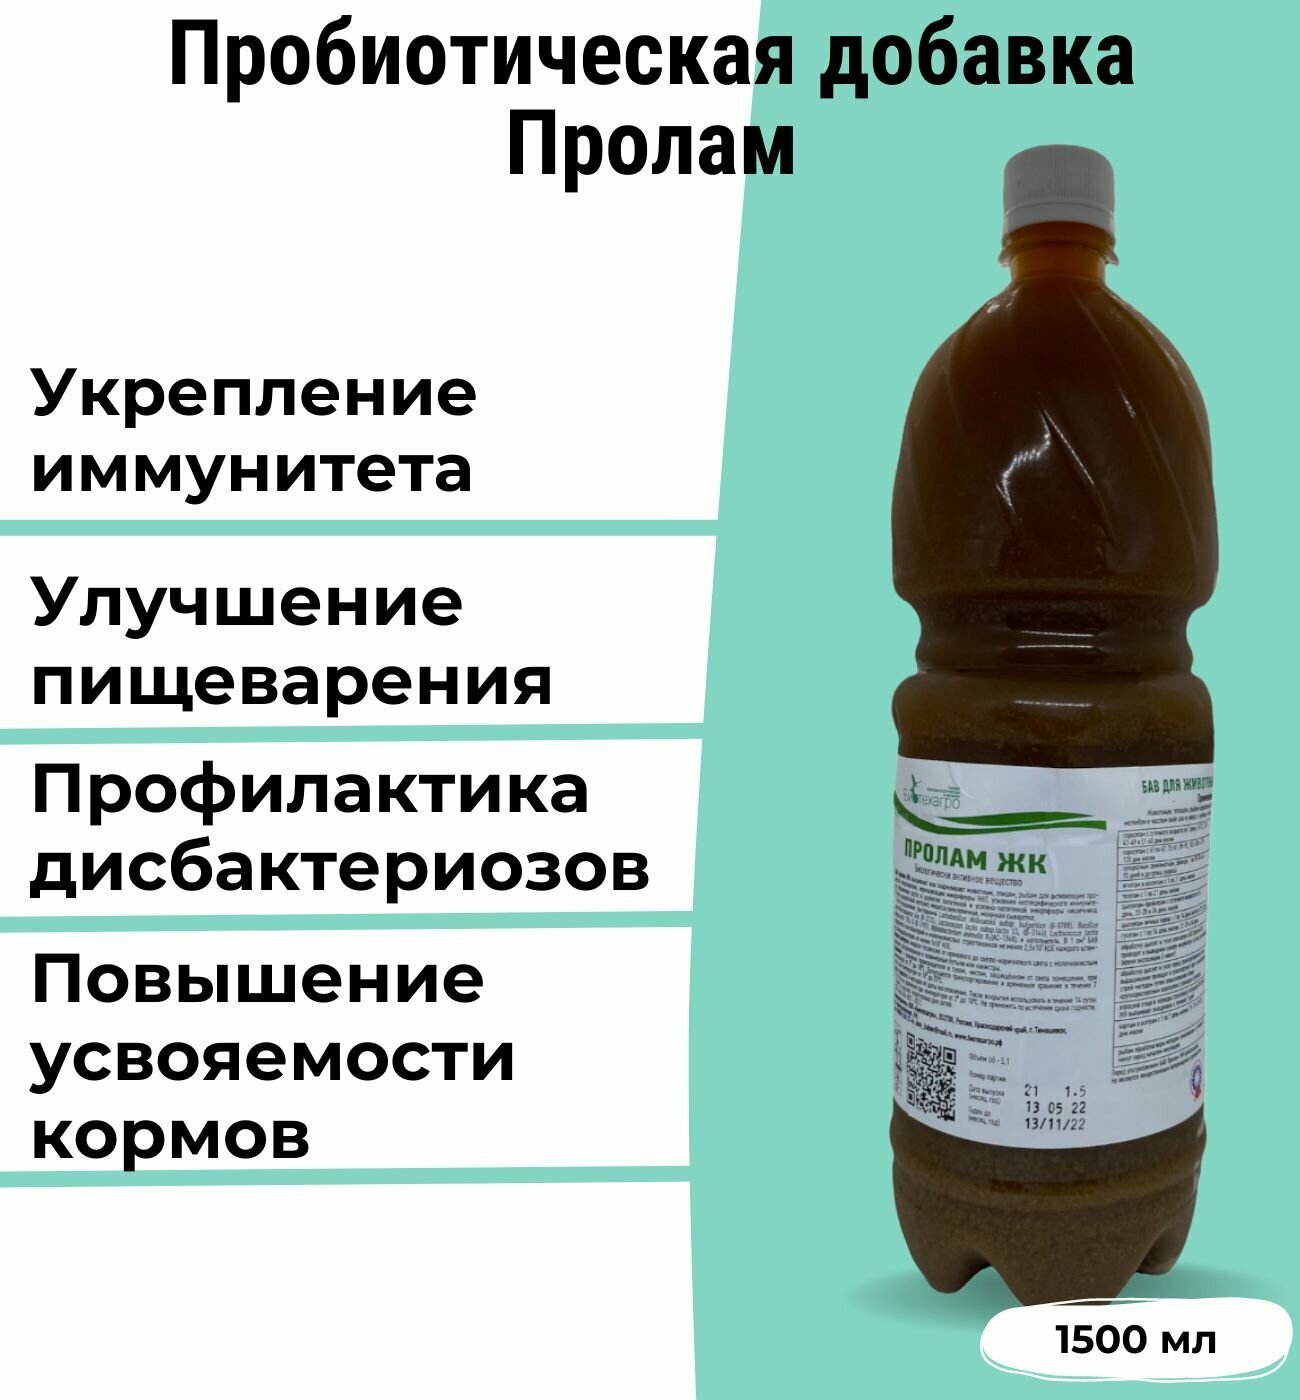 Кормовая добавка (Пробиотик) Пролам - для сельскохозяйственных животных и птиц.